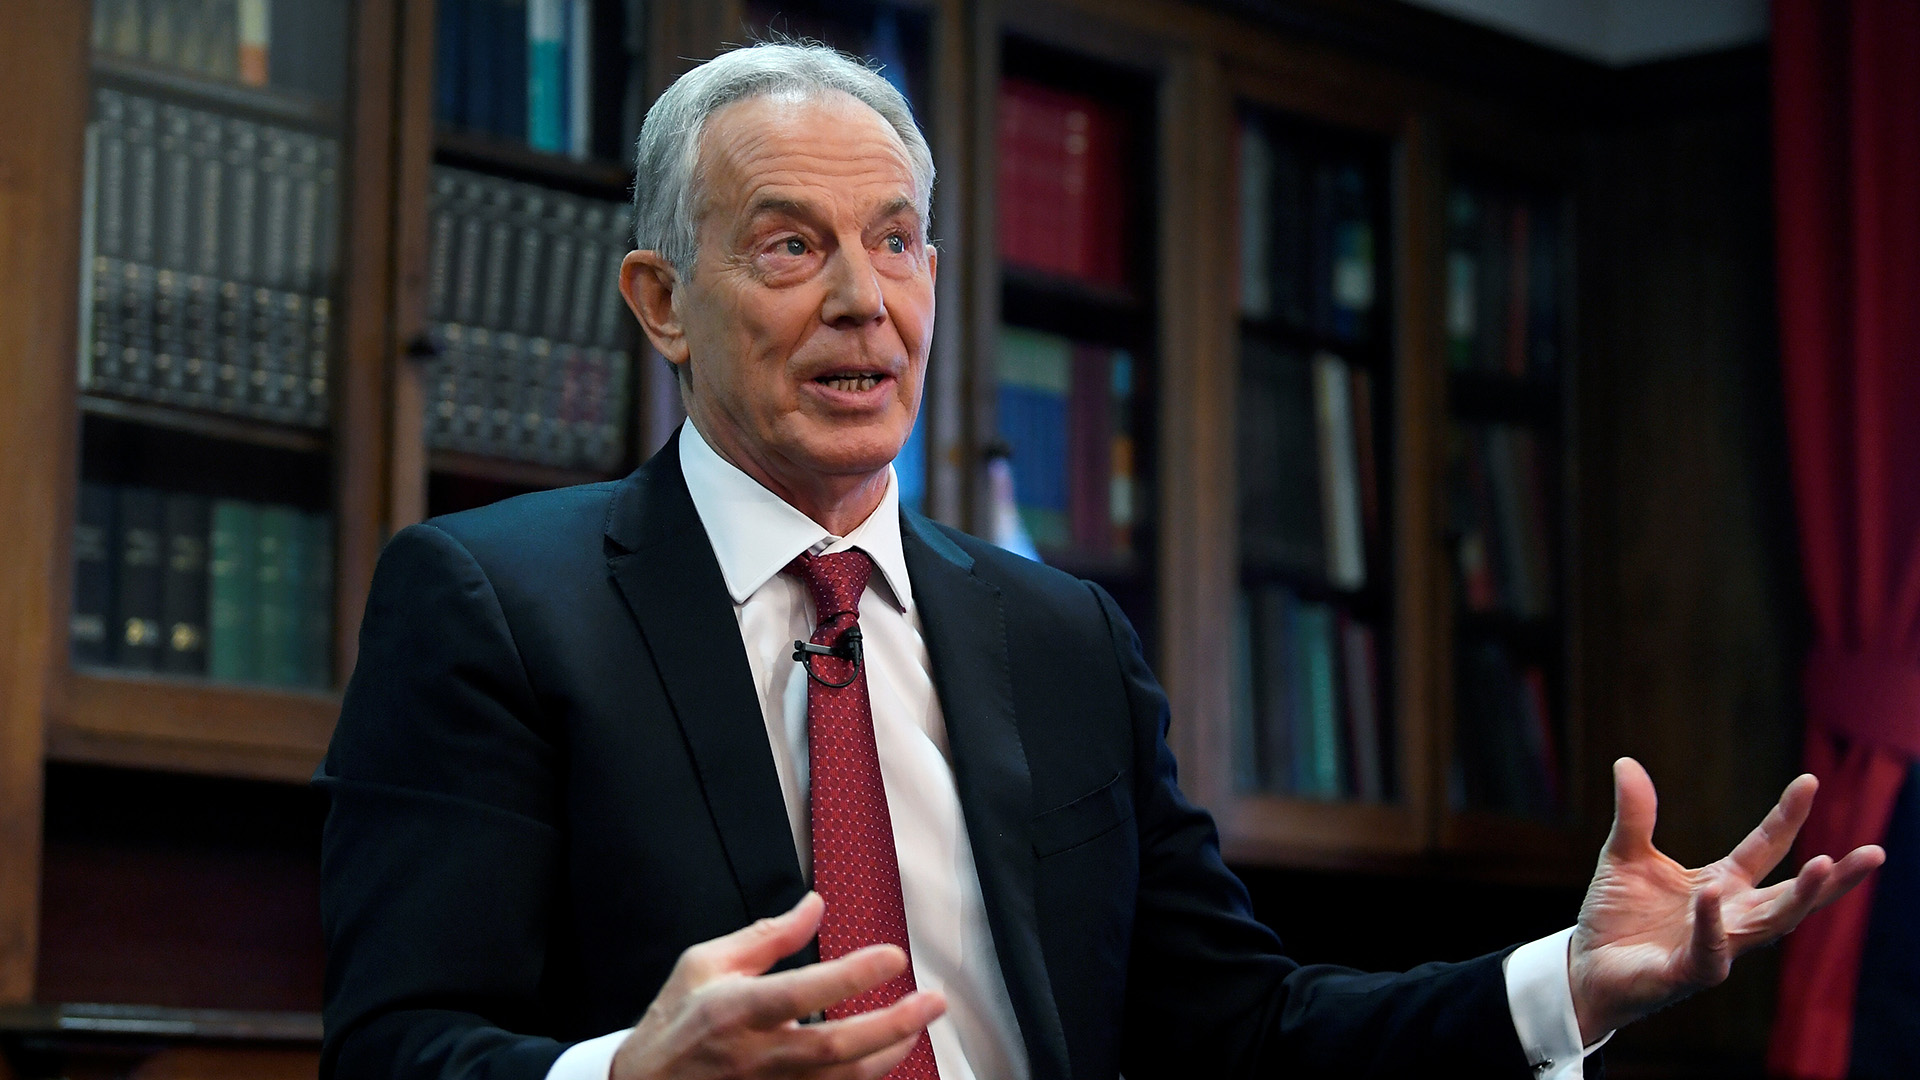 El ex Primer Ministro británico, Tony Blair, y su equipo de expertos señaló que la vacunación es necesaria hoy en “un mundo de variantes más transmisibles y potencialmente más mortales”. /
REUTERS/Toby Melville/File Photo